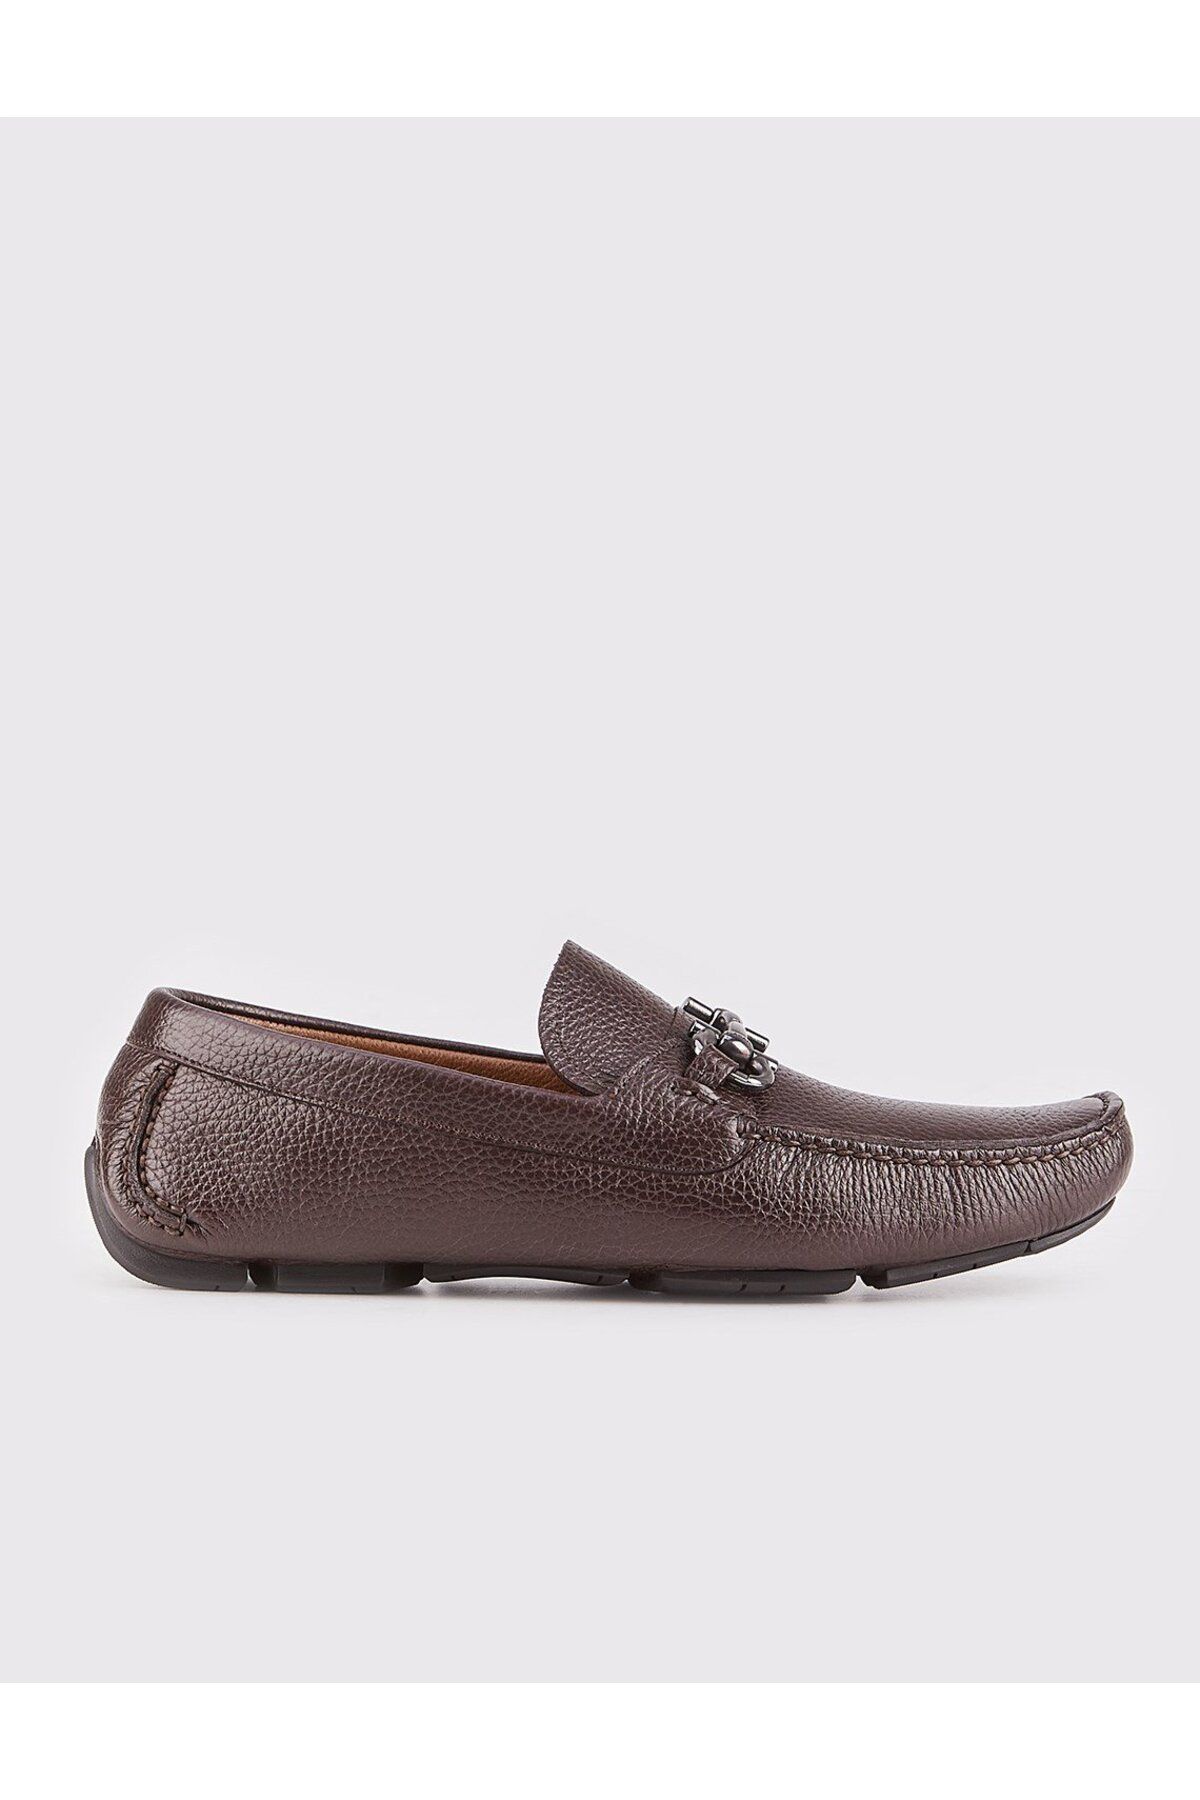 Cabani Erkek Hakiki Deri Kahverengi Toka Detaylı Loafer Ayakkabı